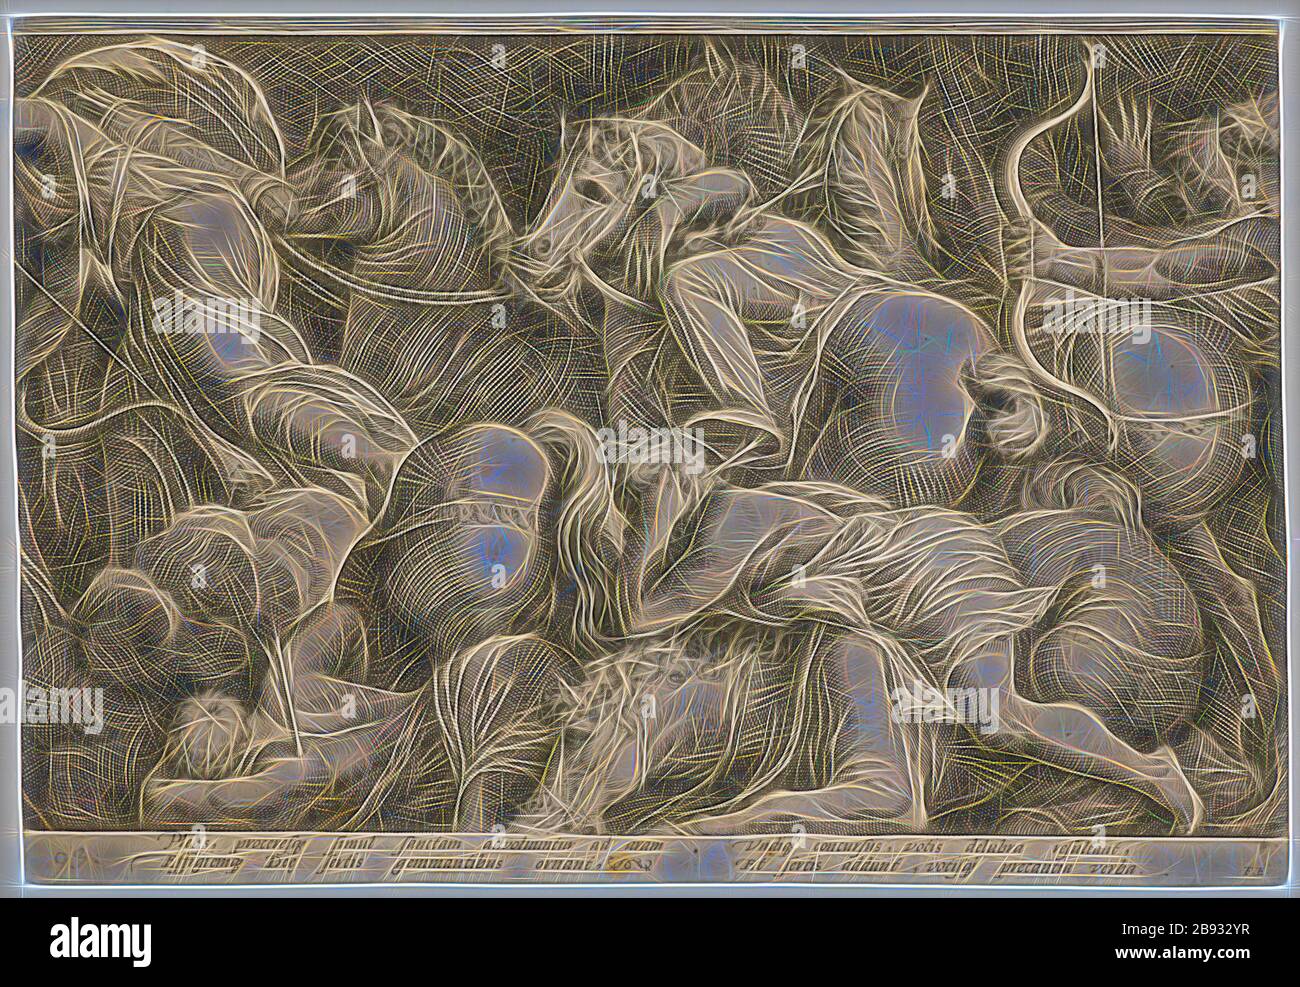 Die Bestrafung von Niobe (zweite Platte), 1594, Kopperplatte, Blatt: 26,3 x 38,4 cm (innerhalb des Plattenrandes geschnitten), eingeschrieben unter dem Bildfeld: Plebs, proceresq [ue] simul sanctam advoluuntur ad aram, effigiemq [ue] de [a, ] sertis gemantibus, vandidant, vandultis, vandultis, vandarntis, vandidant. Votisq [ue] precantia verba., FE, Jan Saenredam, Stecher, Zaandam 1565-1607 Assendelft, Hendrick Goltzius, Zeichner, Mühlbrecht 1558-1617 Haarlem, Polidoro Caldara, gen. Da Caravaggio, Inventor, Caravaggio bei Bergamo um 1499 (?) - 1543 Messina, von Gibon neu erdacht, Design Stockfoto